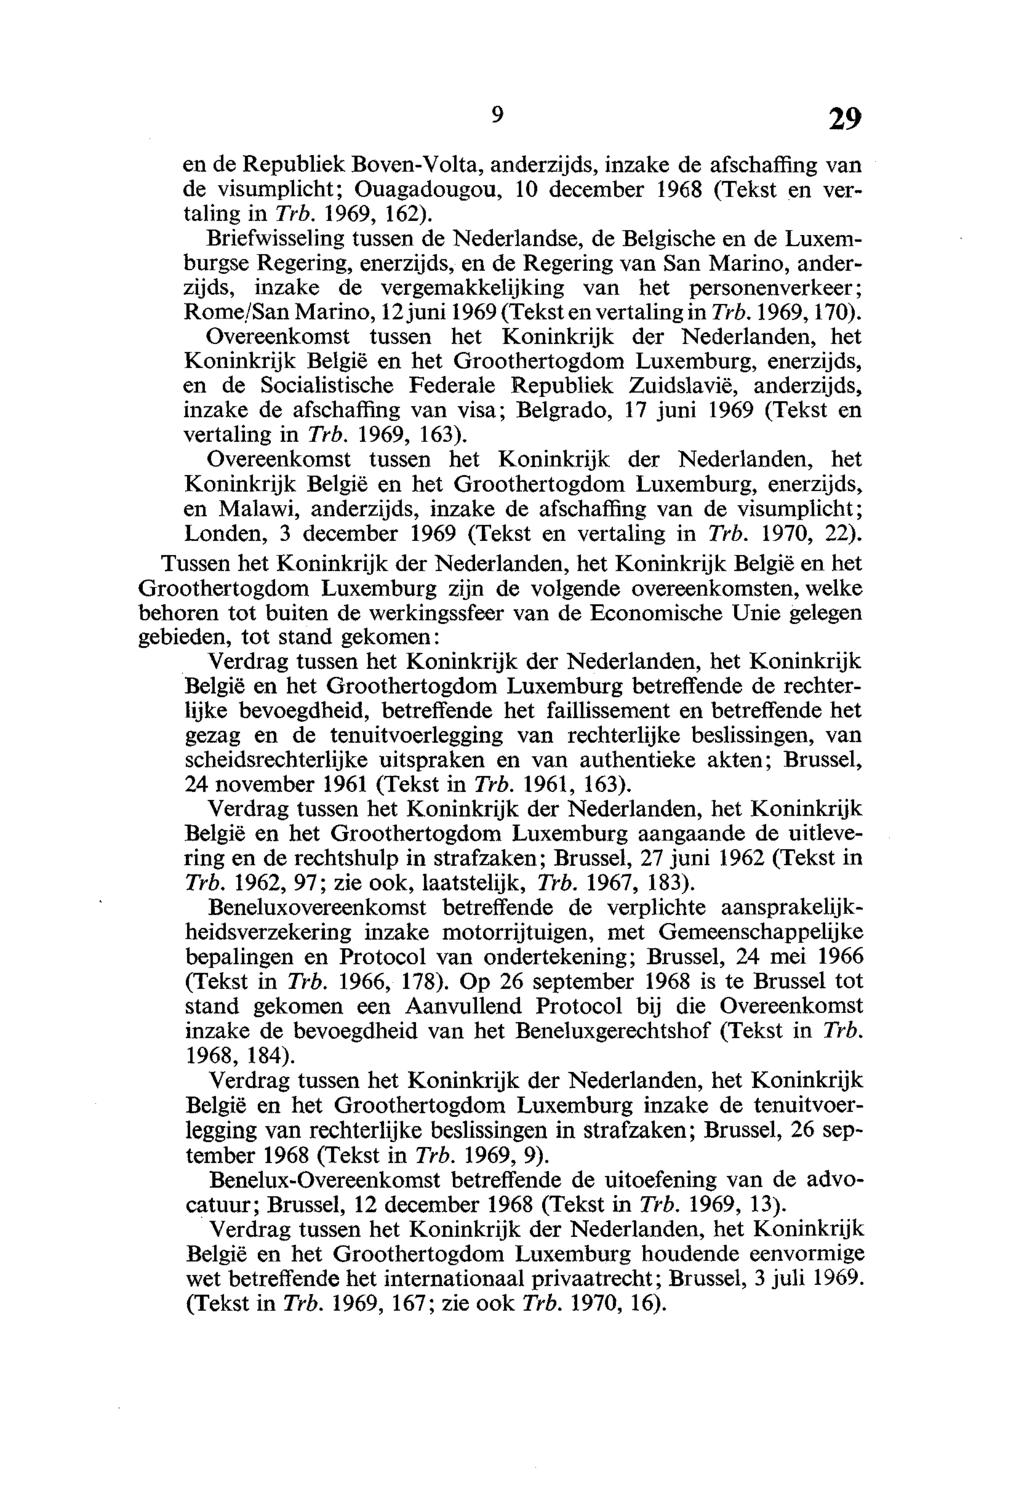 en de Republiek Boven-Volta, anderzijds, inzake de afschaffing van de visumplicht; Ouagadougou, 10 december 1968 (Tekst en vertaling in Trb. 1969, 162).